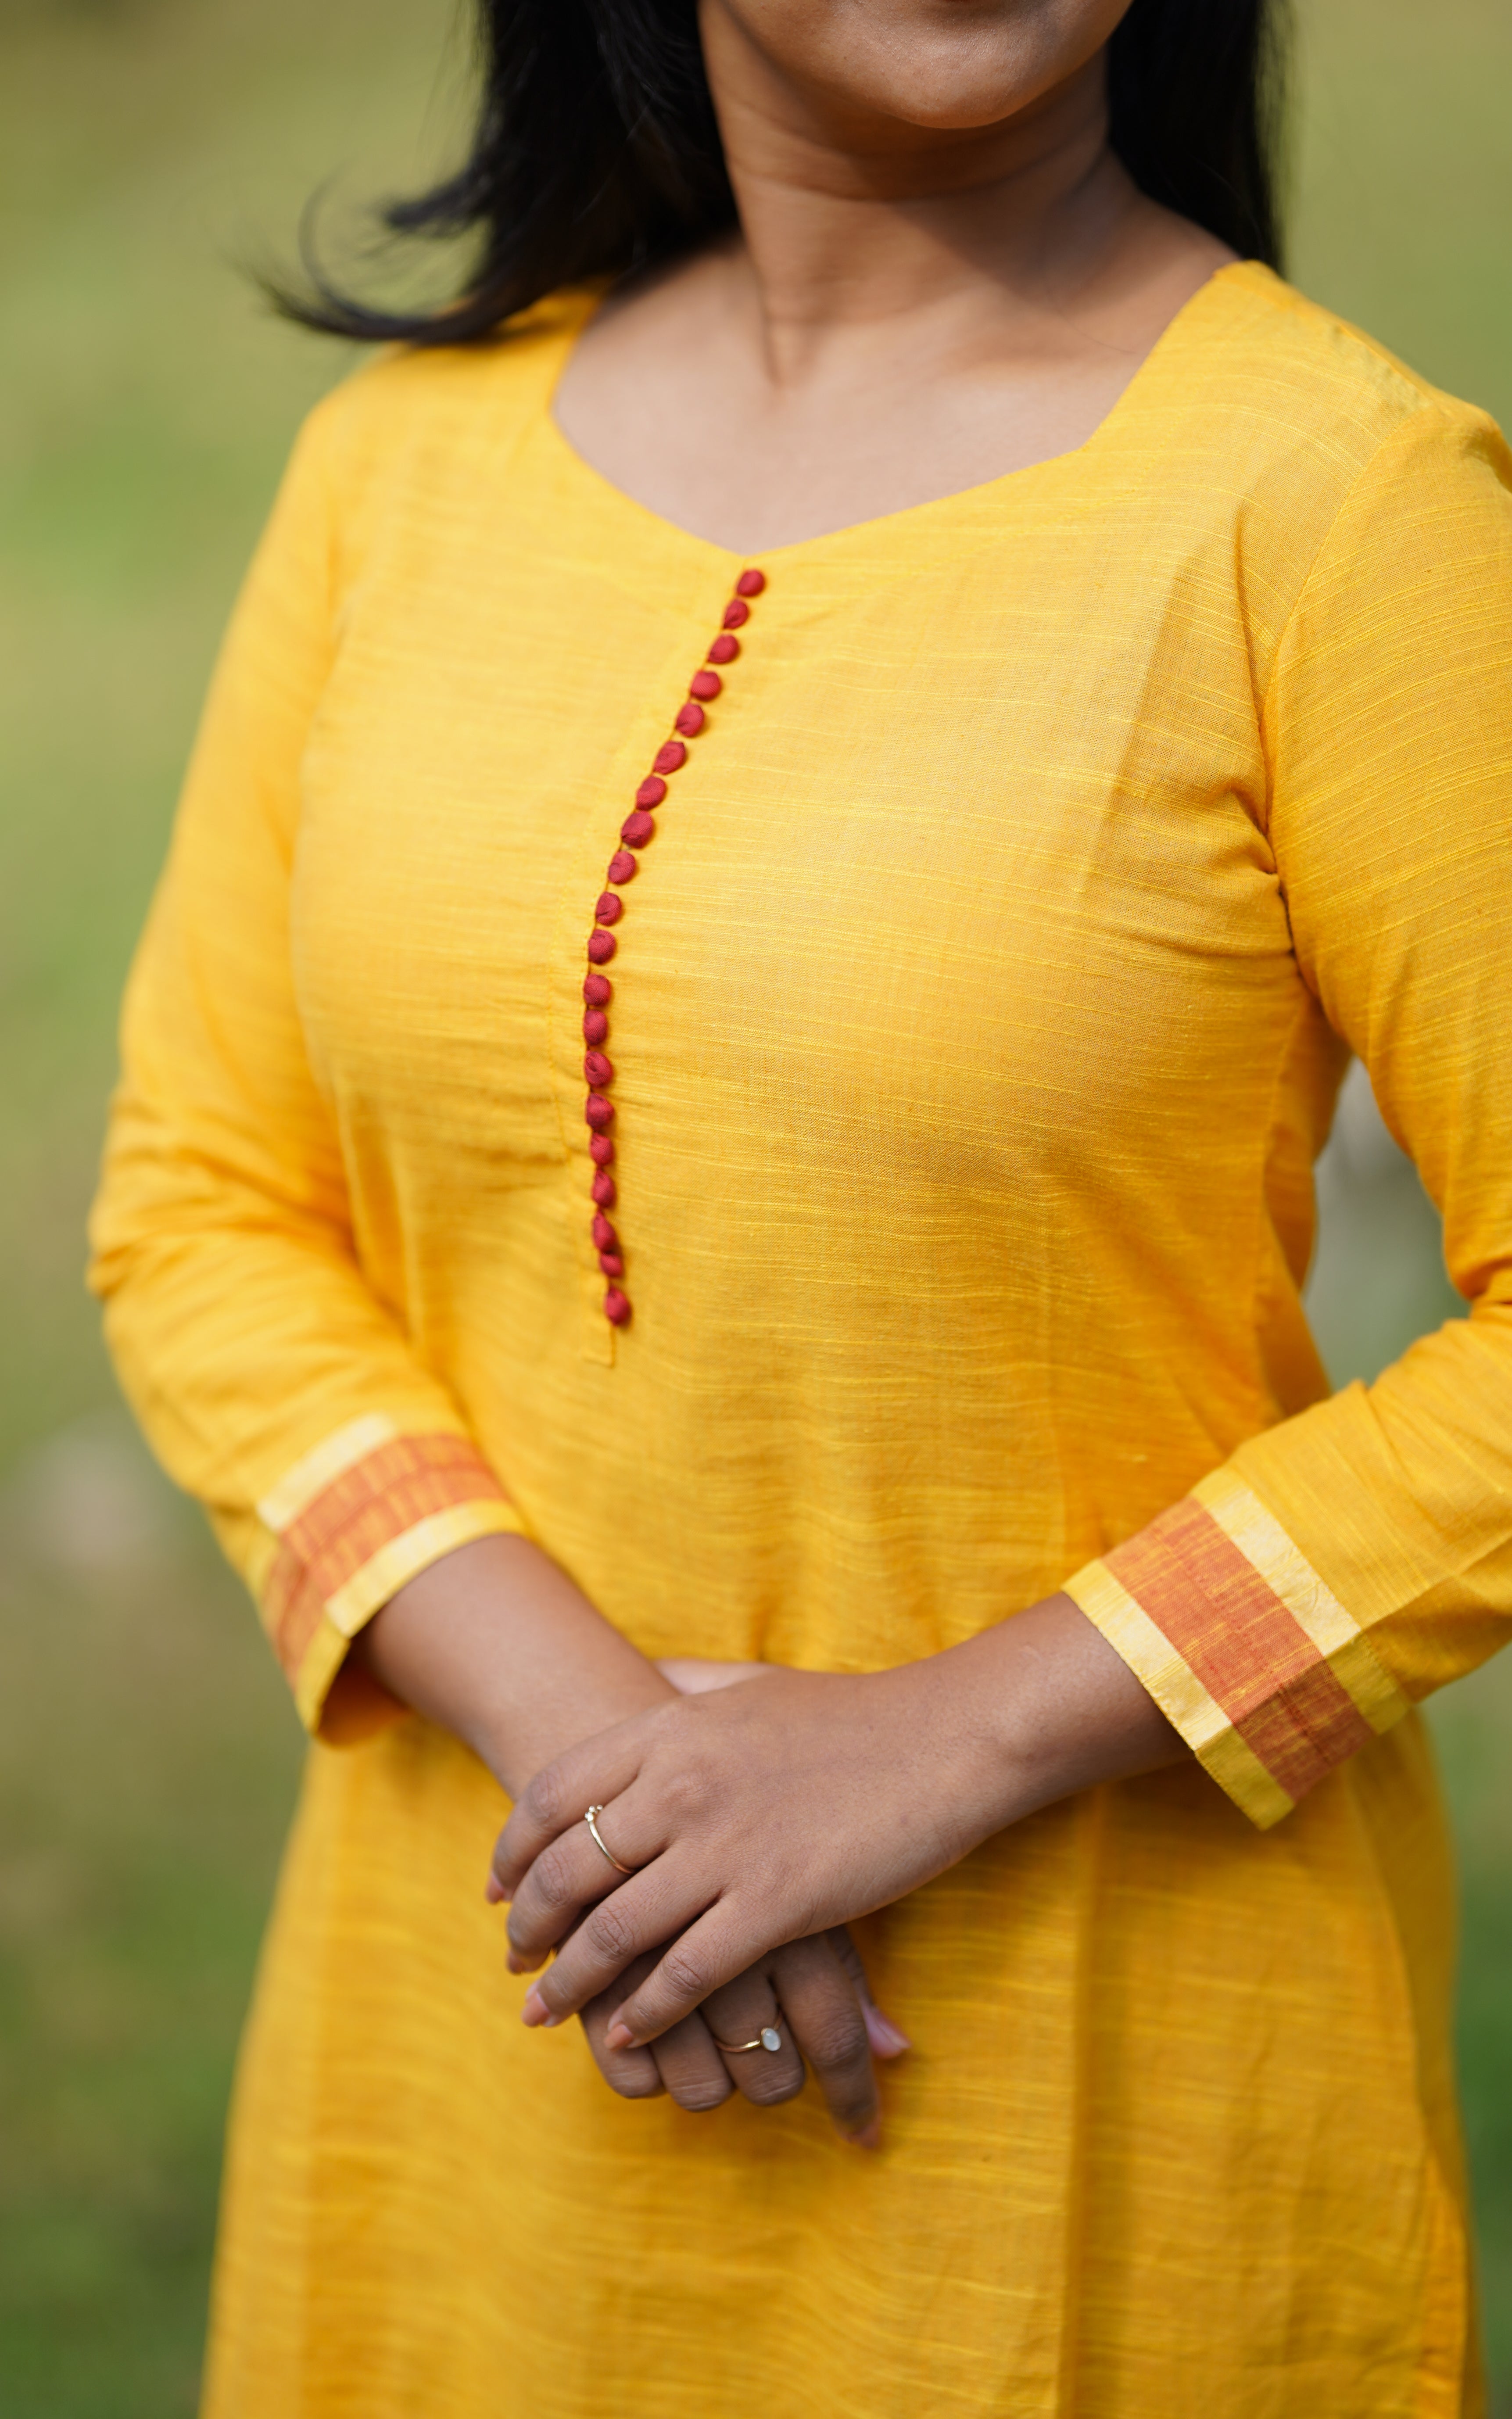 Sunitha Mustard